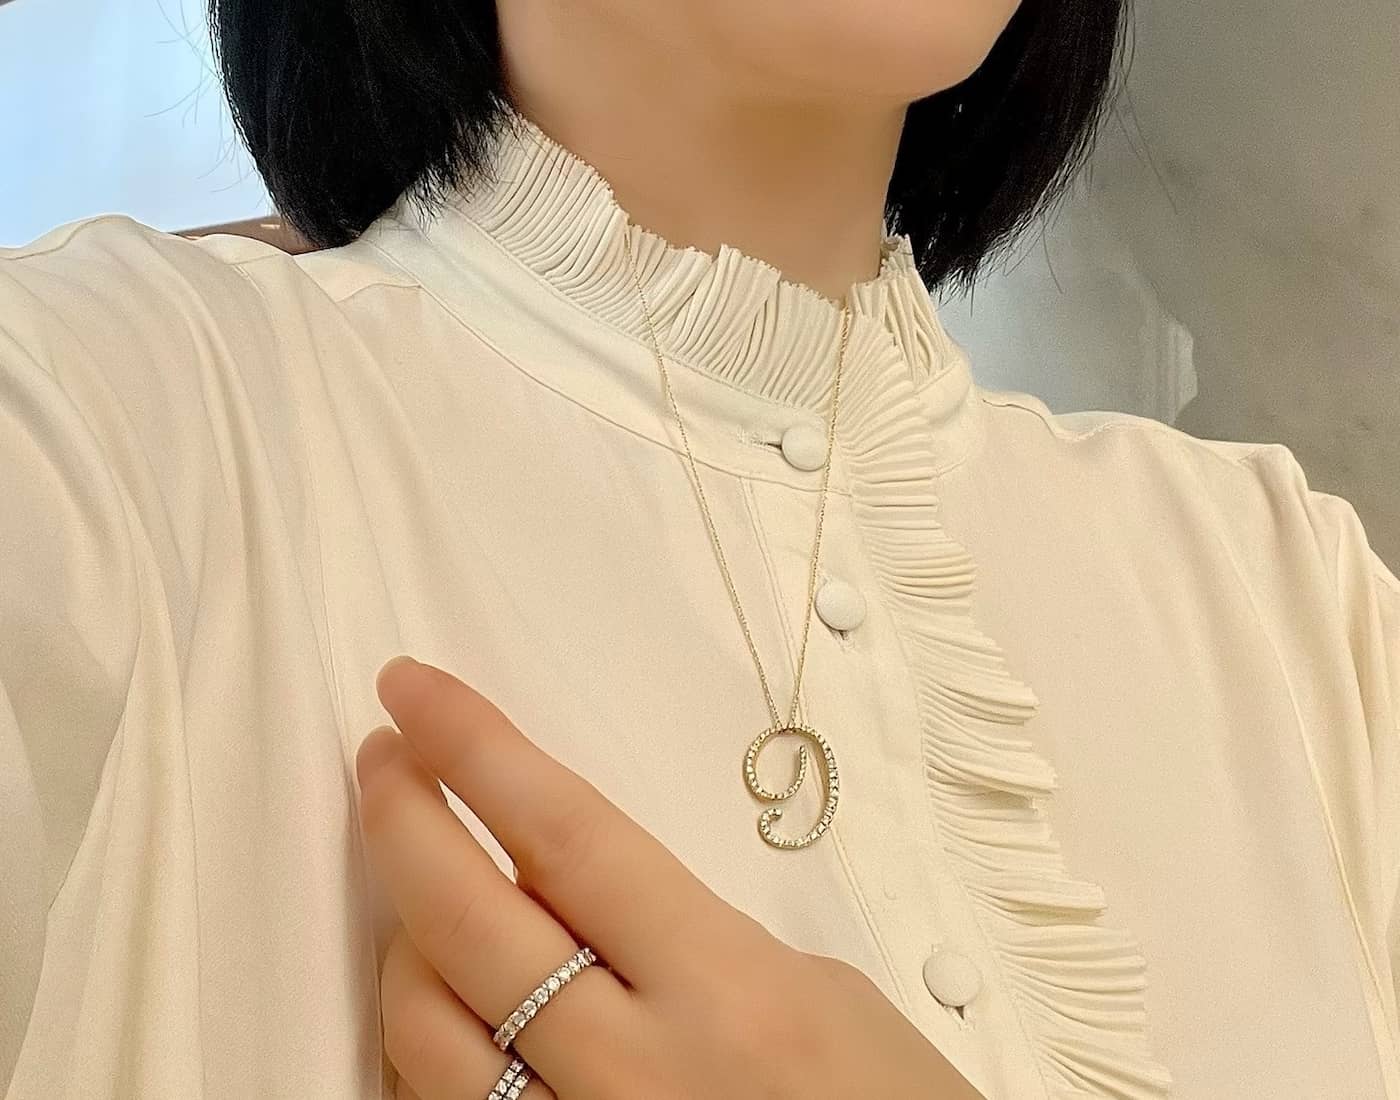 ラボグロウンダイヤモンド専門店『september5』のナンバーネックレス（数字ネックレス）数字９の形のプラチナネックレスの着画